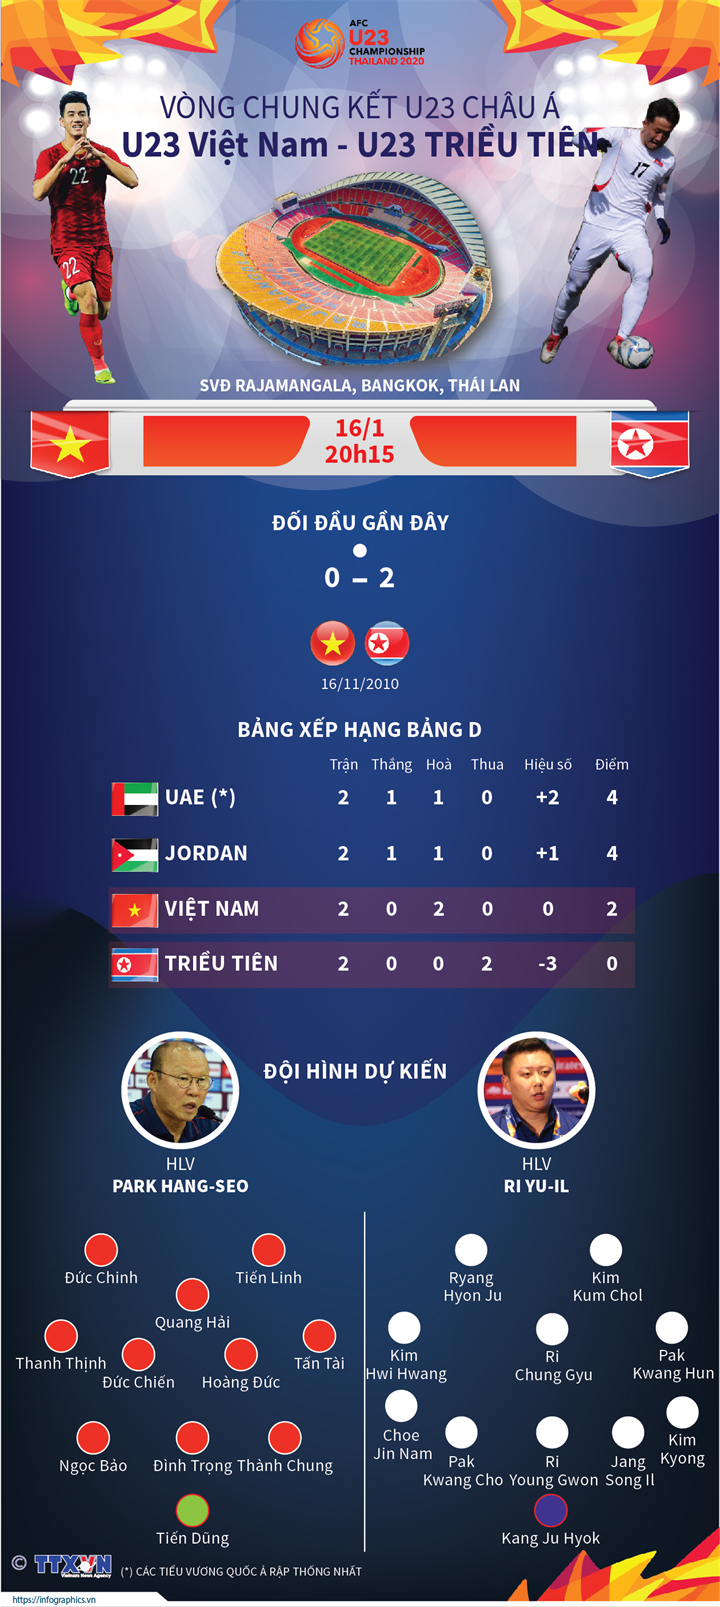 Vòng chung kết U23 Châu Á: U23 Việt Nam - U23 Triều Tiên